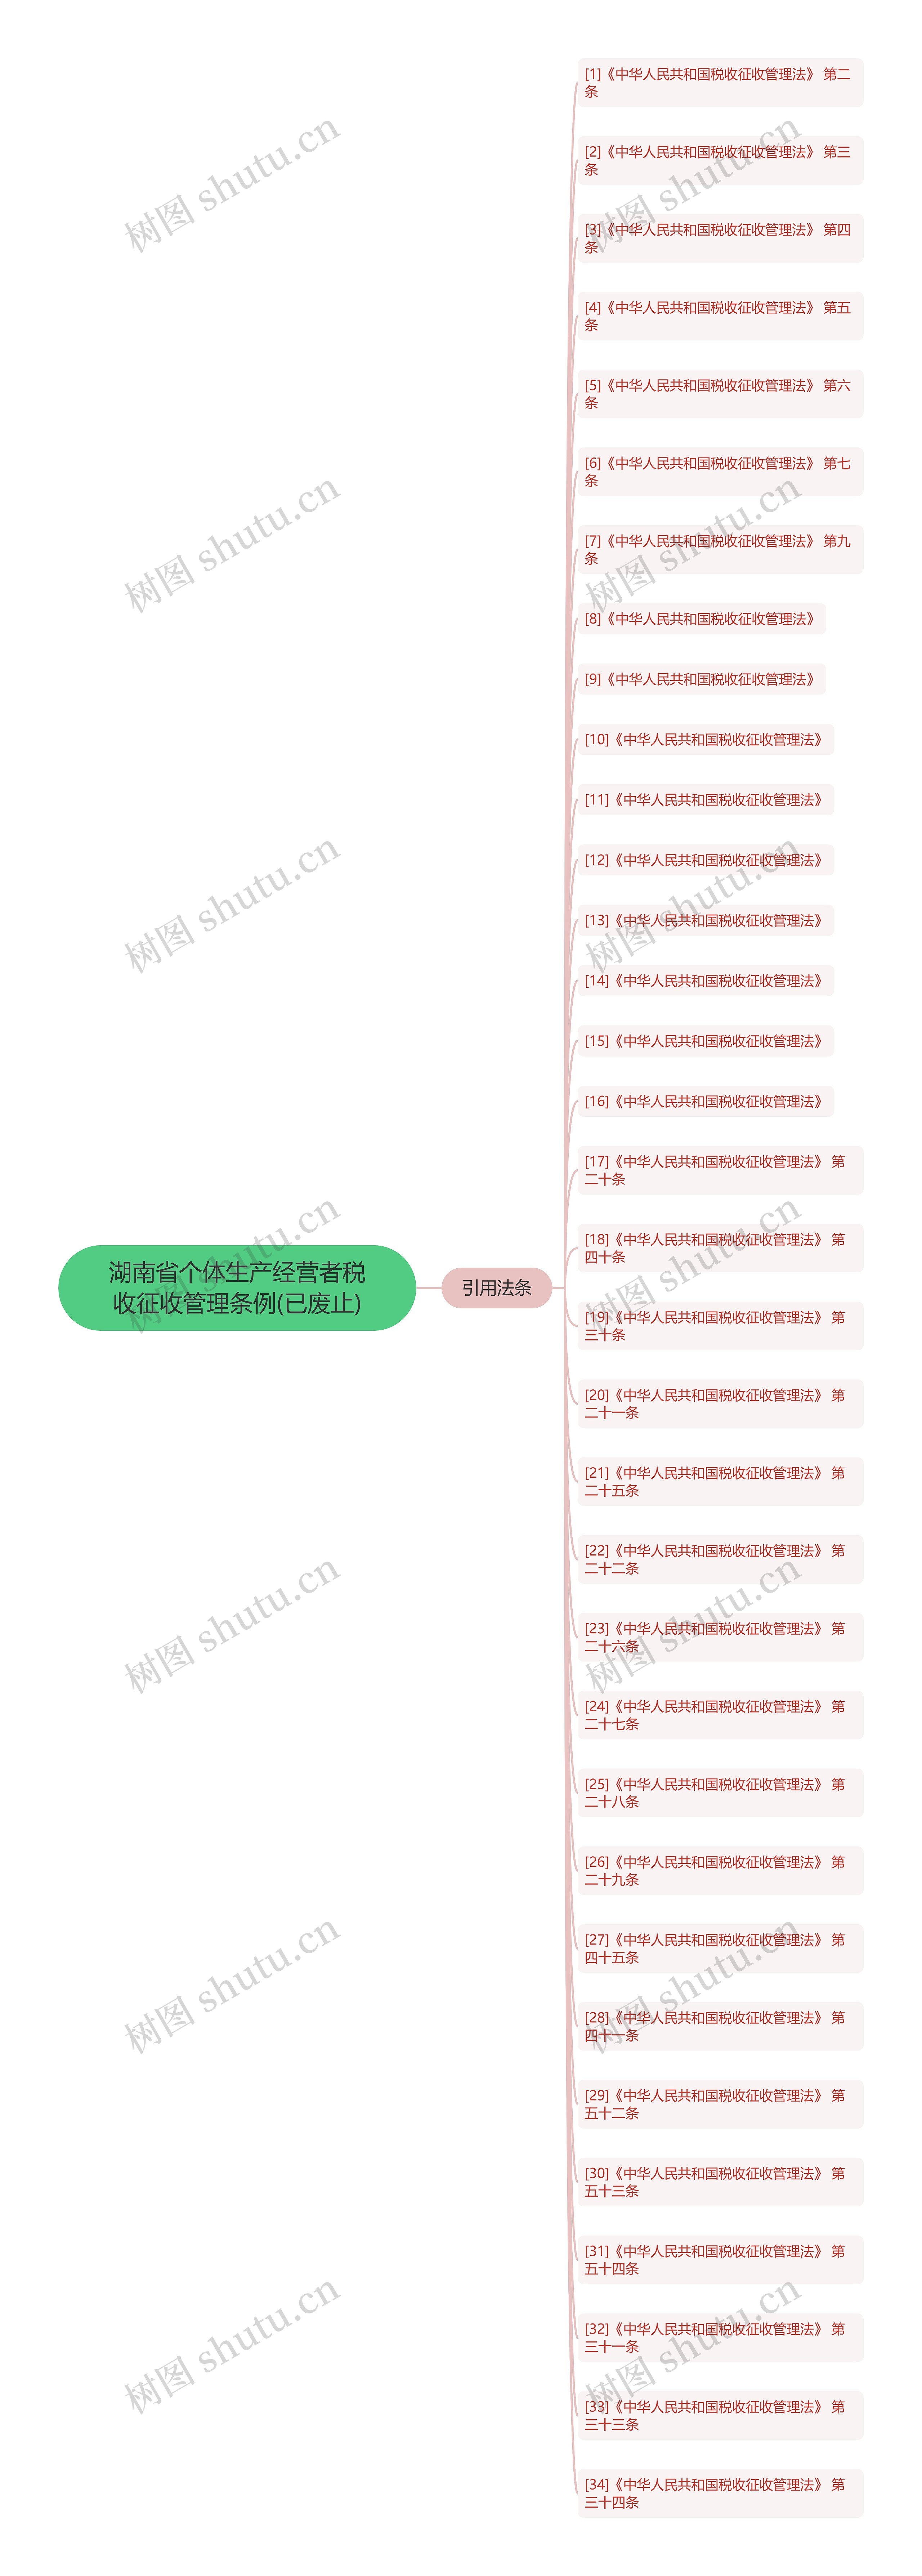 湖南省个体生产经营者税收征收管理条例(已废止)